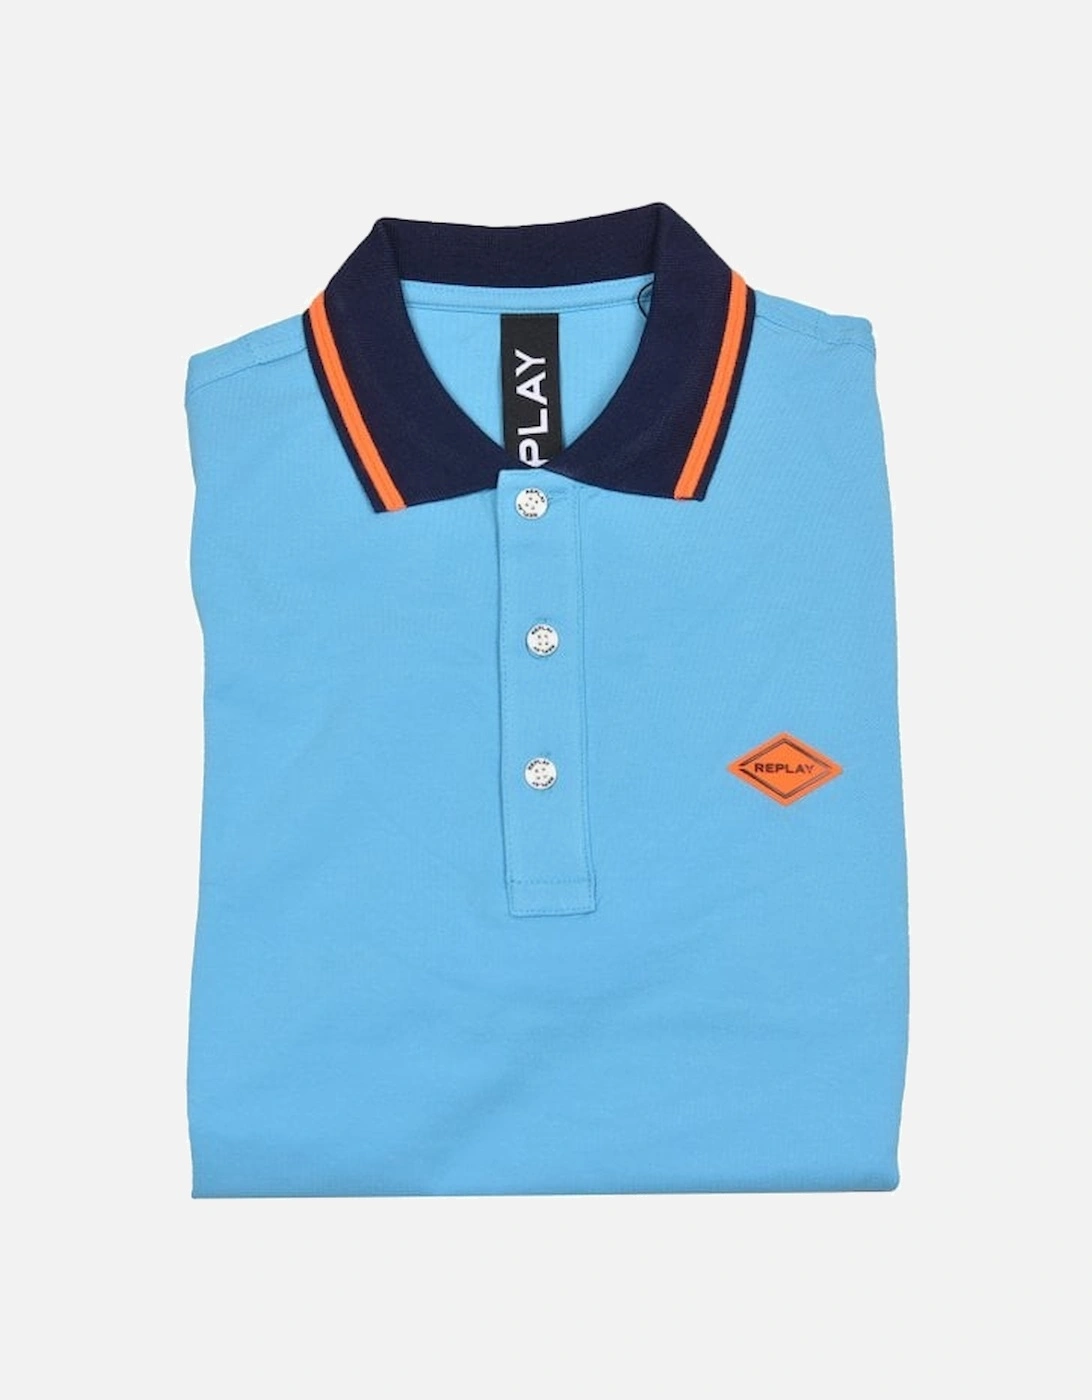 Contrast Collar Stretch Pique Polo Shirt, Azure Blue